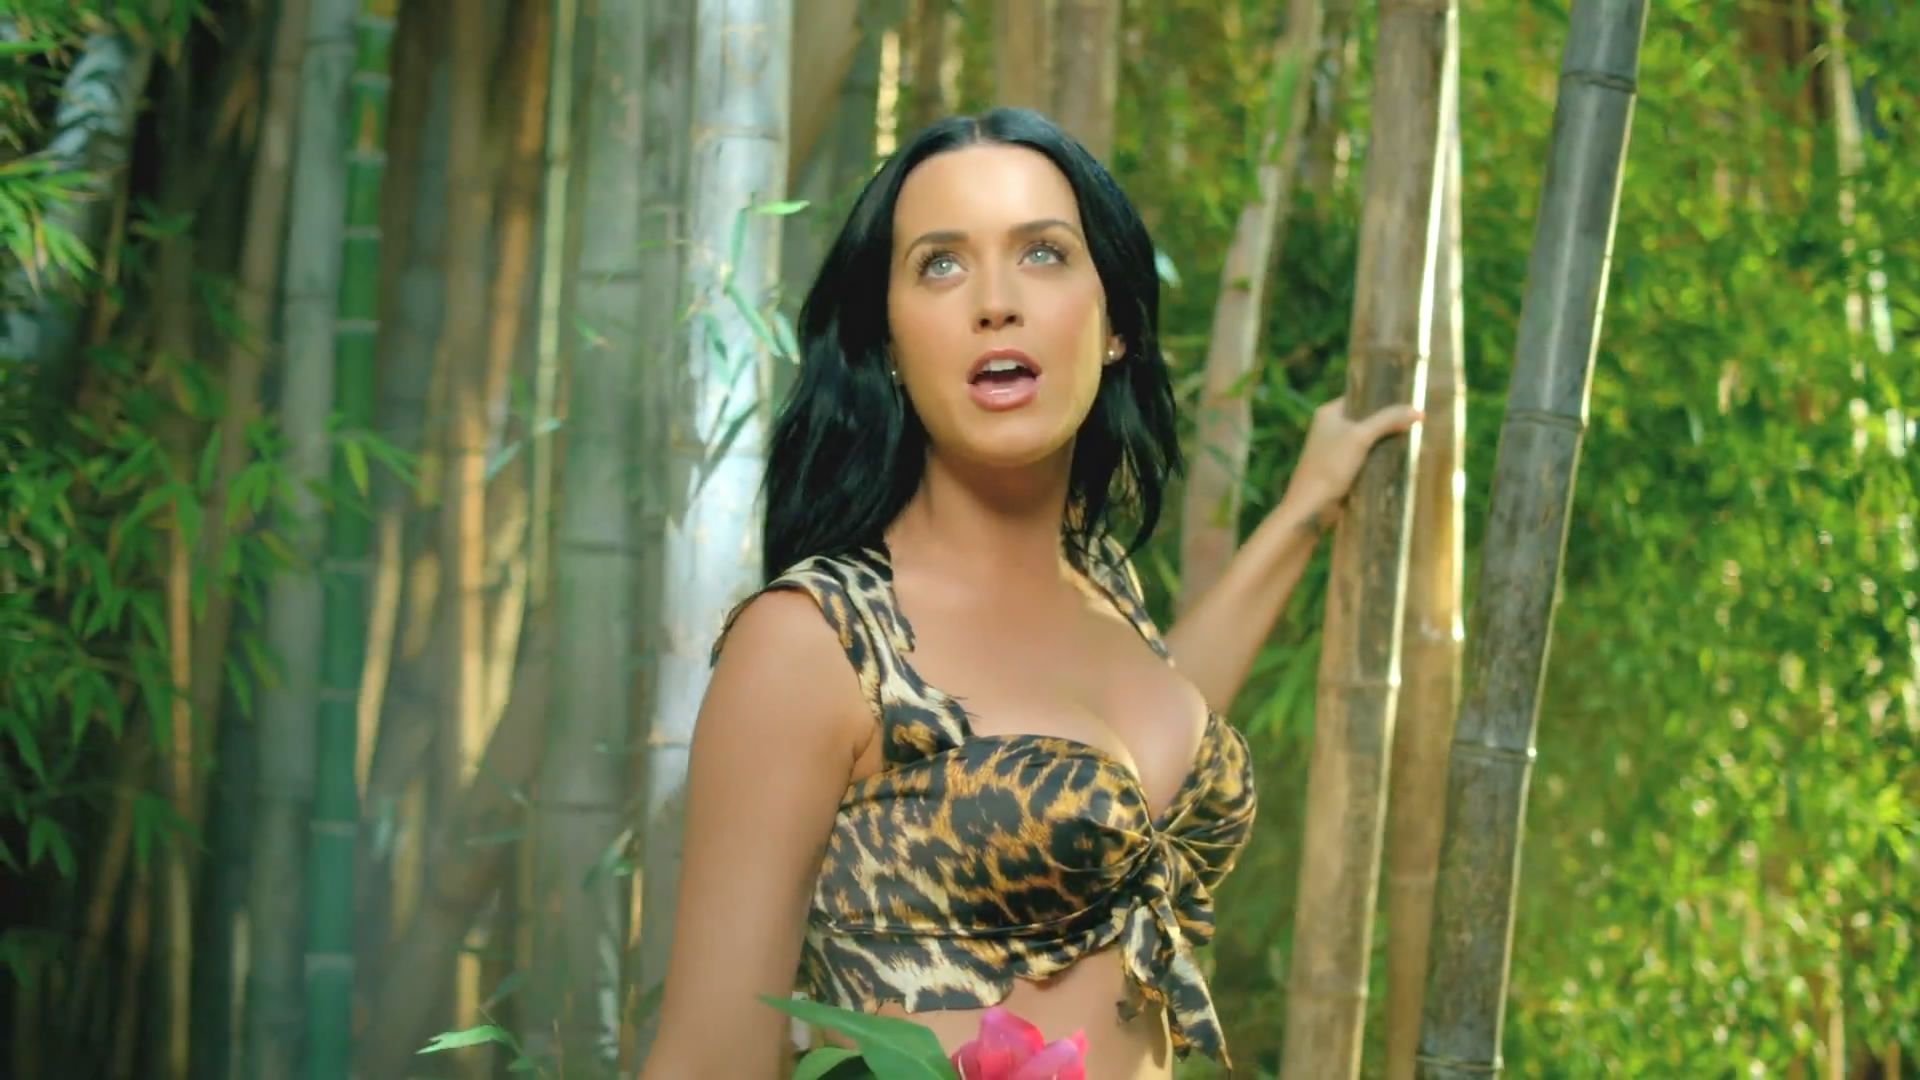 Katy Perry Dans Roar :bave: :baiser: Sur Le Forum Blabla 18 25 Ans 04 2014 01:02:42